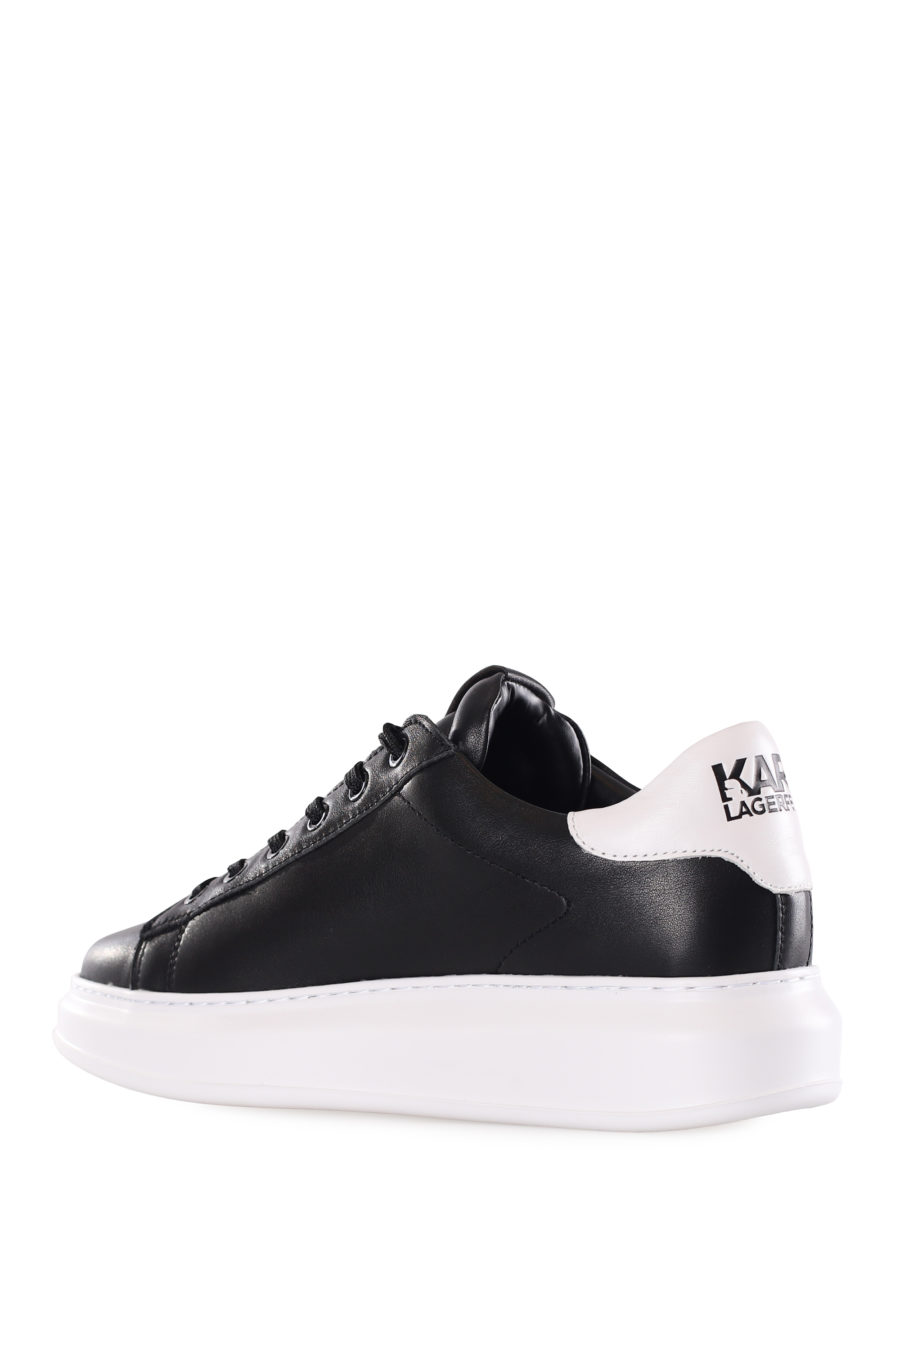 Baskets noires avec logo "karl" en caoutchouc - IMG 9555